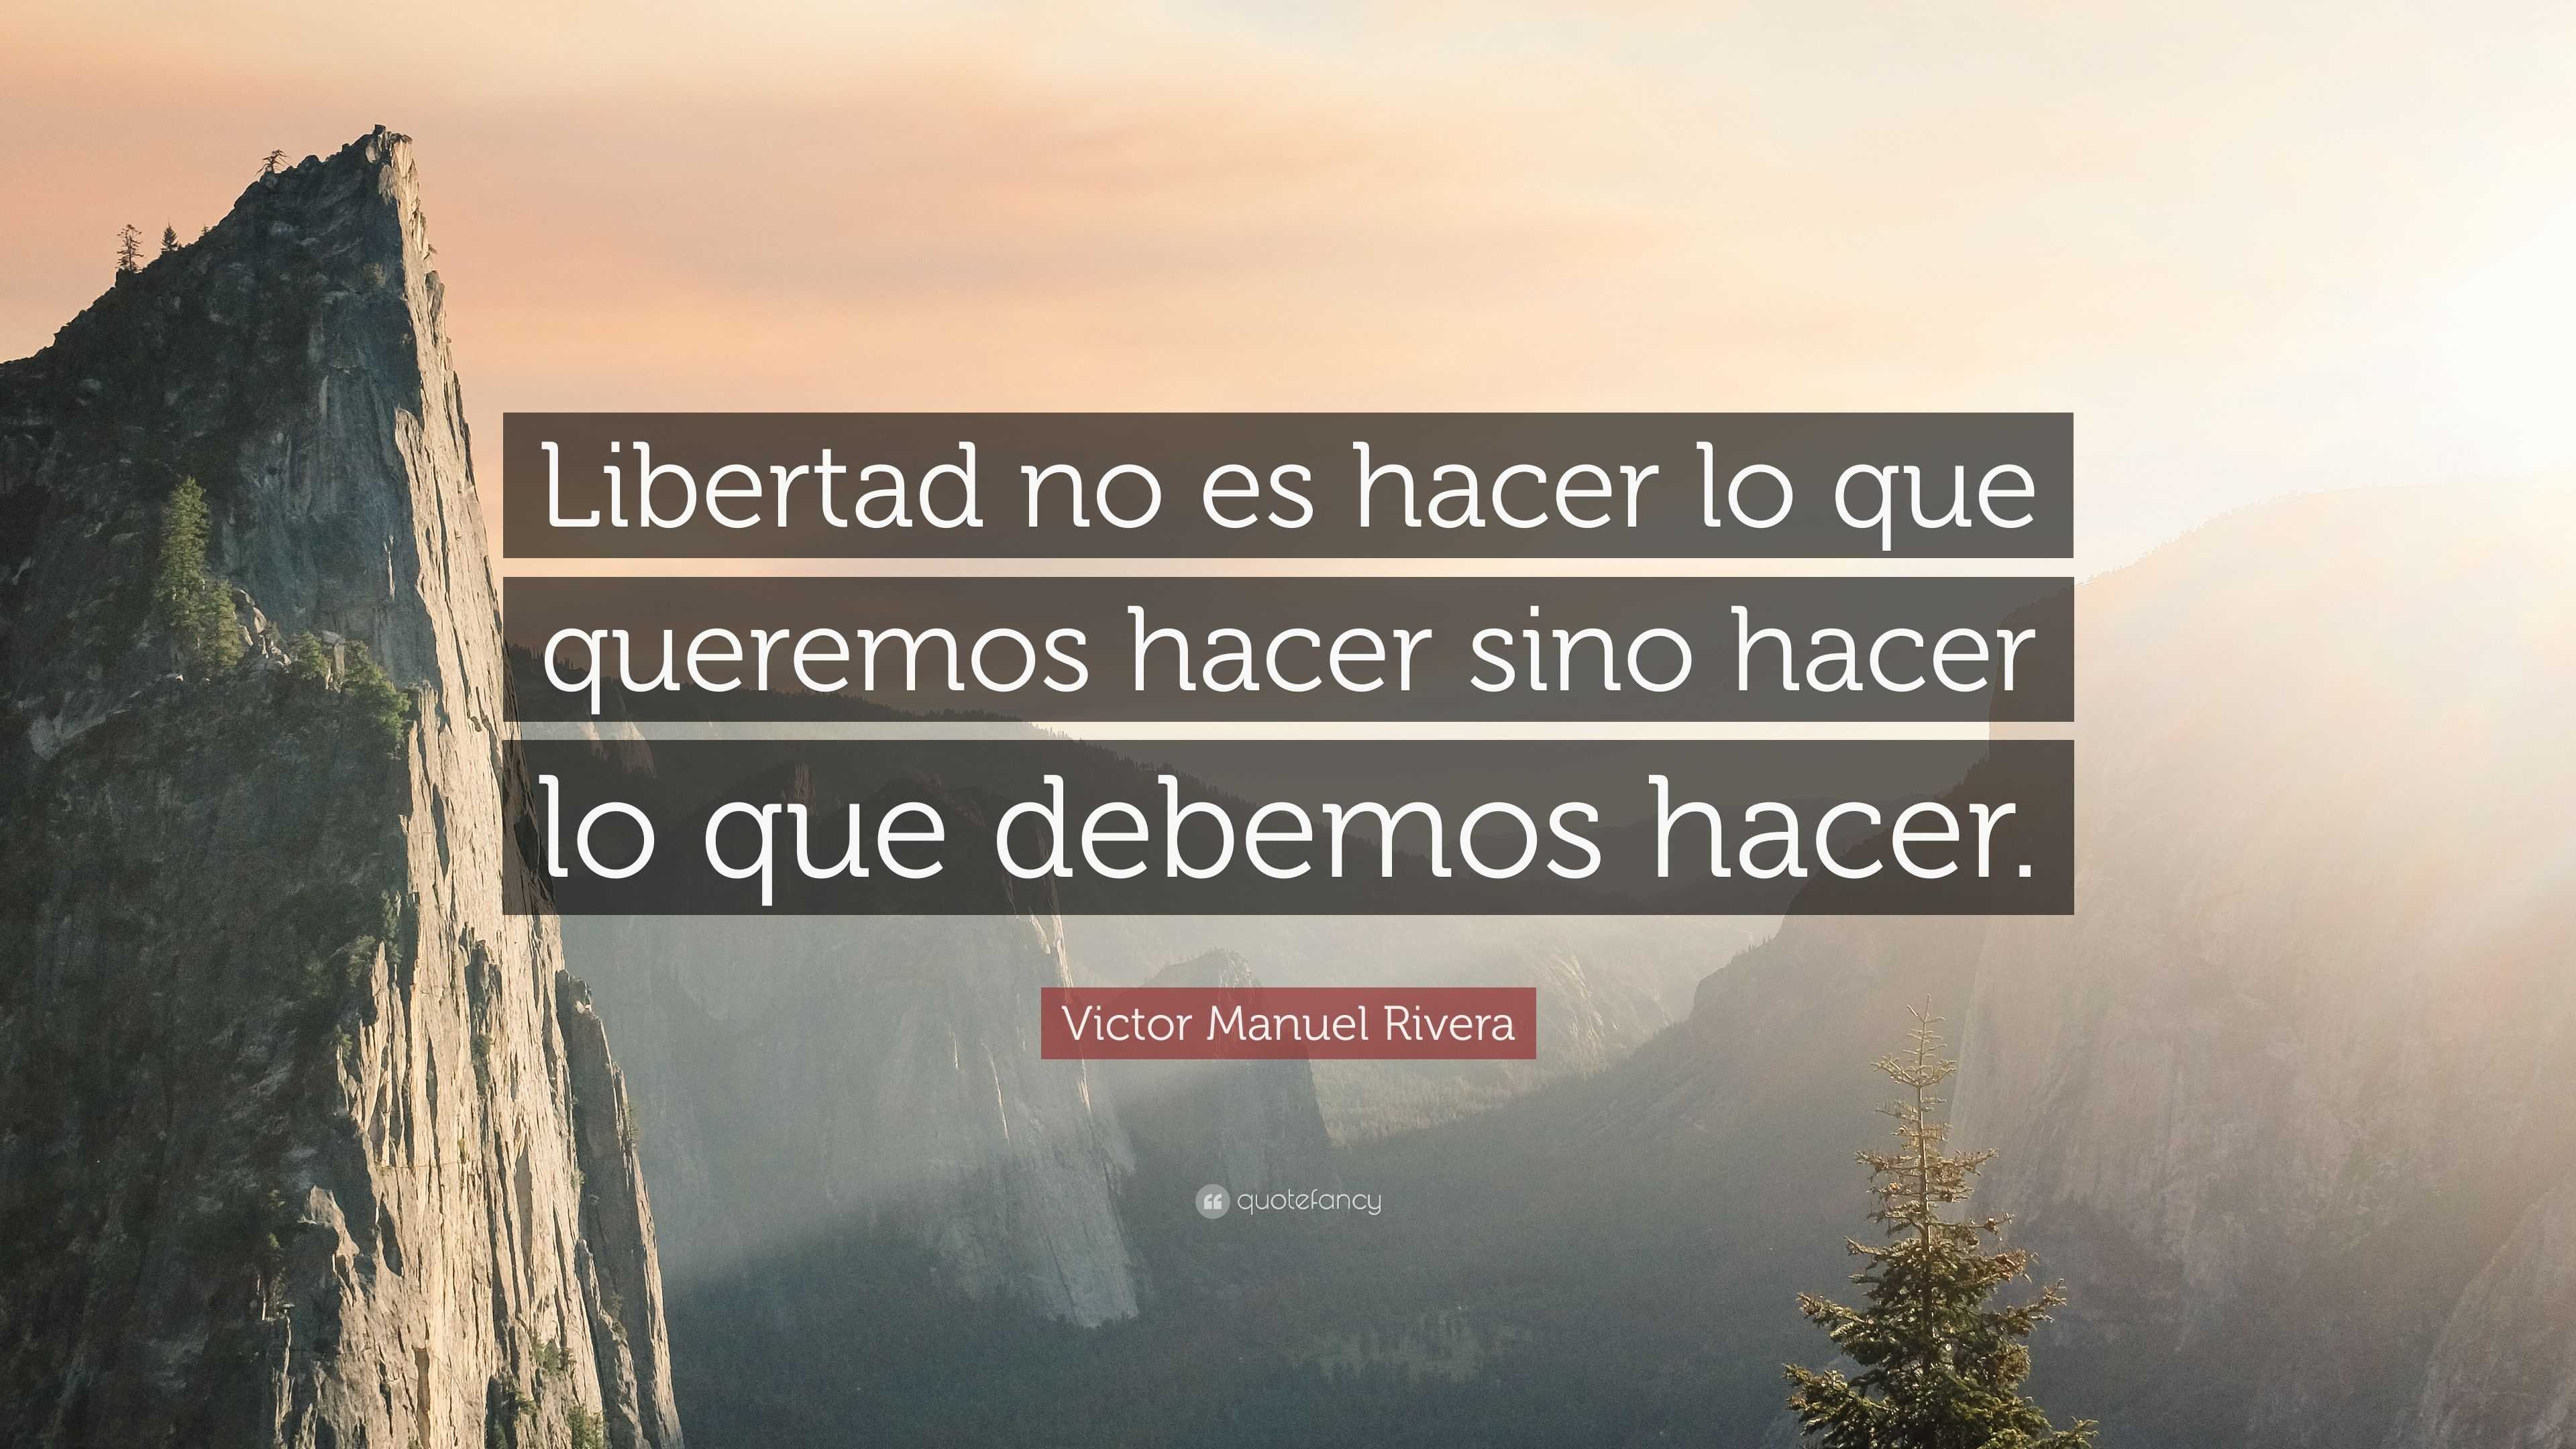 Victor Manuel Rivera Quote: “Libertad no es hacer lo que queremos hacer ...